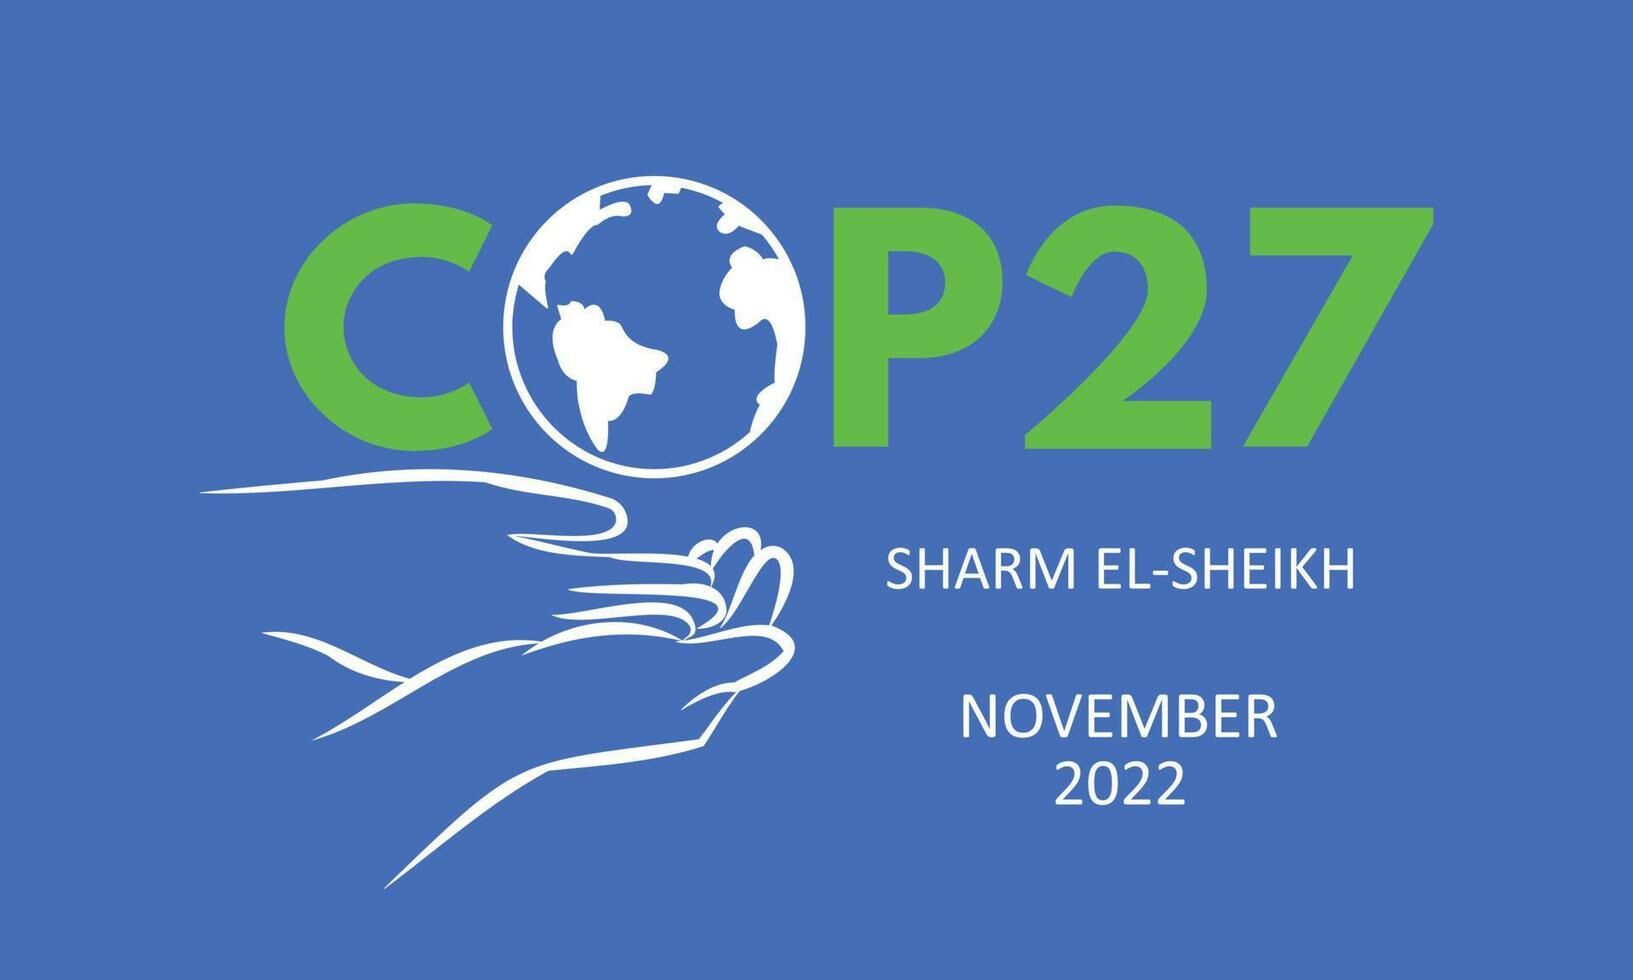 ¿Qué podemos esperar de la COP27? Schroders opina